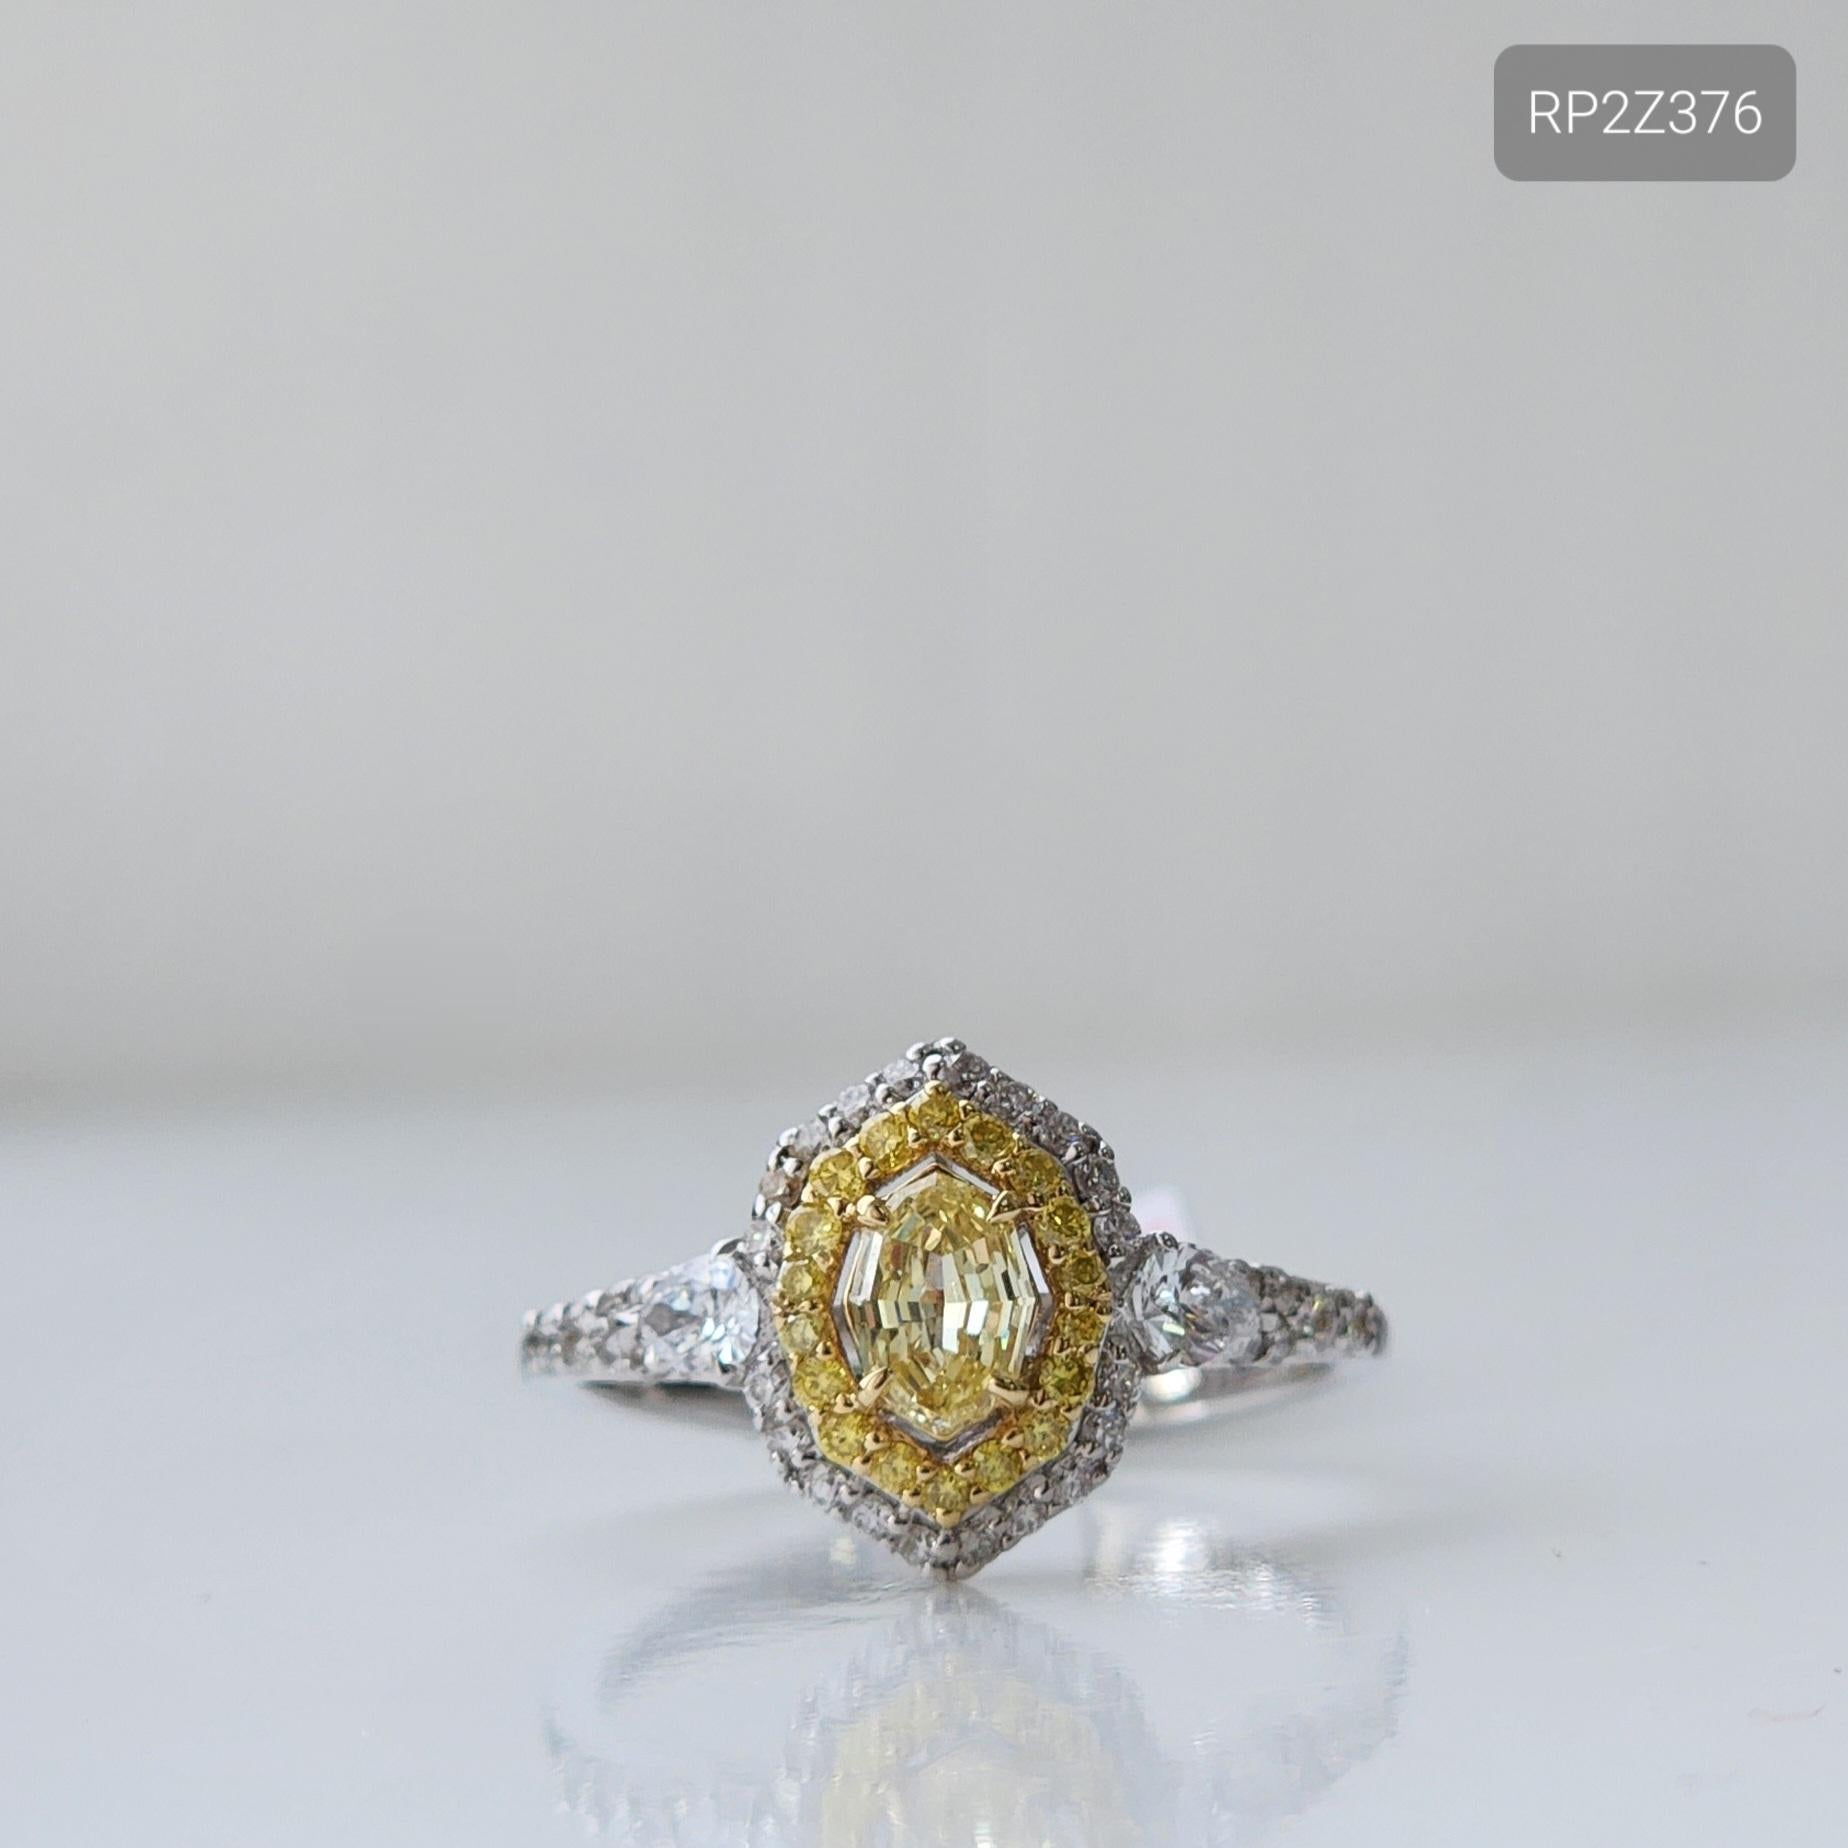 Laissez-vous séduire par l'éclat captivant de cette bague halo en diamant ovale jaune à taille échelonnée, un mélange parfait de sophistication et d'élégance. La bague présente un diamant ovale jaune naturel de 0,3 carat taillé en escalier, entouré